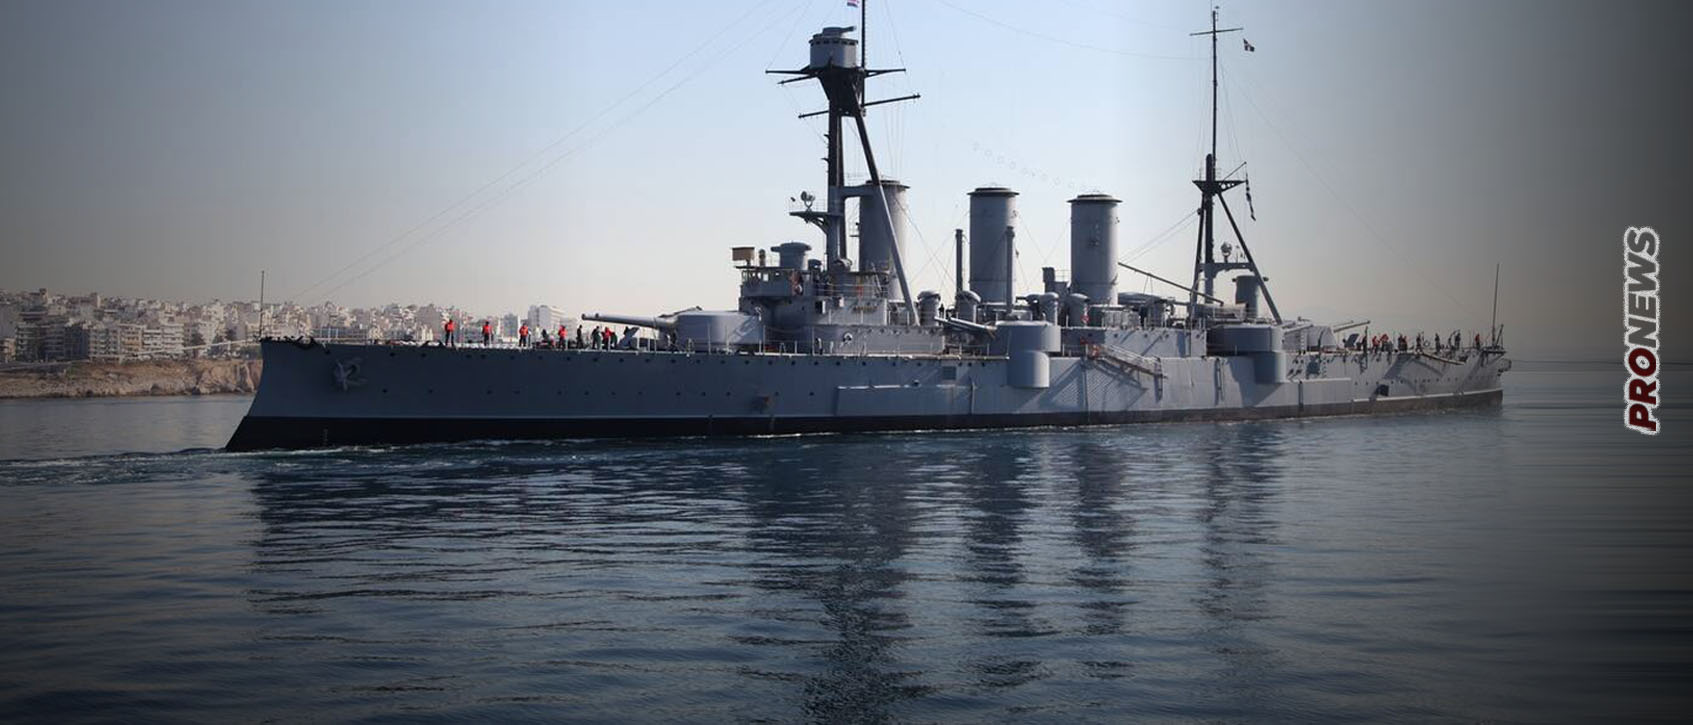 Θωρηκτό «Γ. Αβέρωφ»: Ο Θρύλος του ελληνικού Ναυτικού & η δράση του